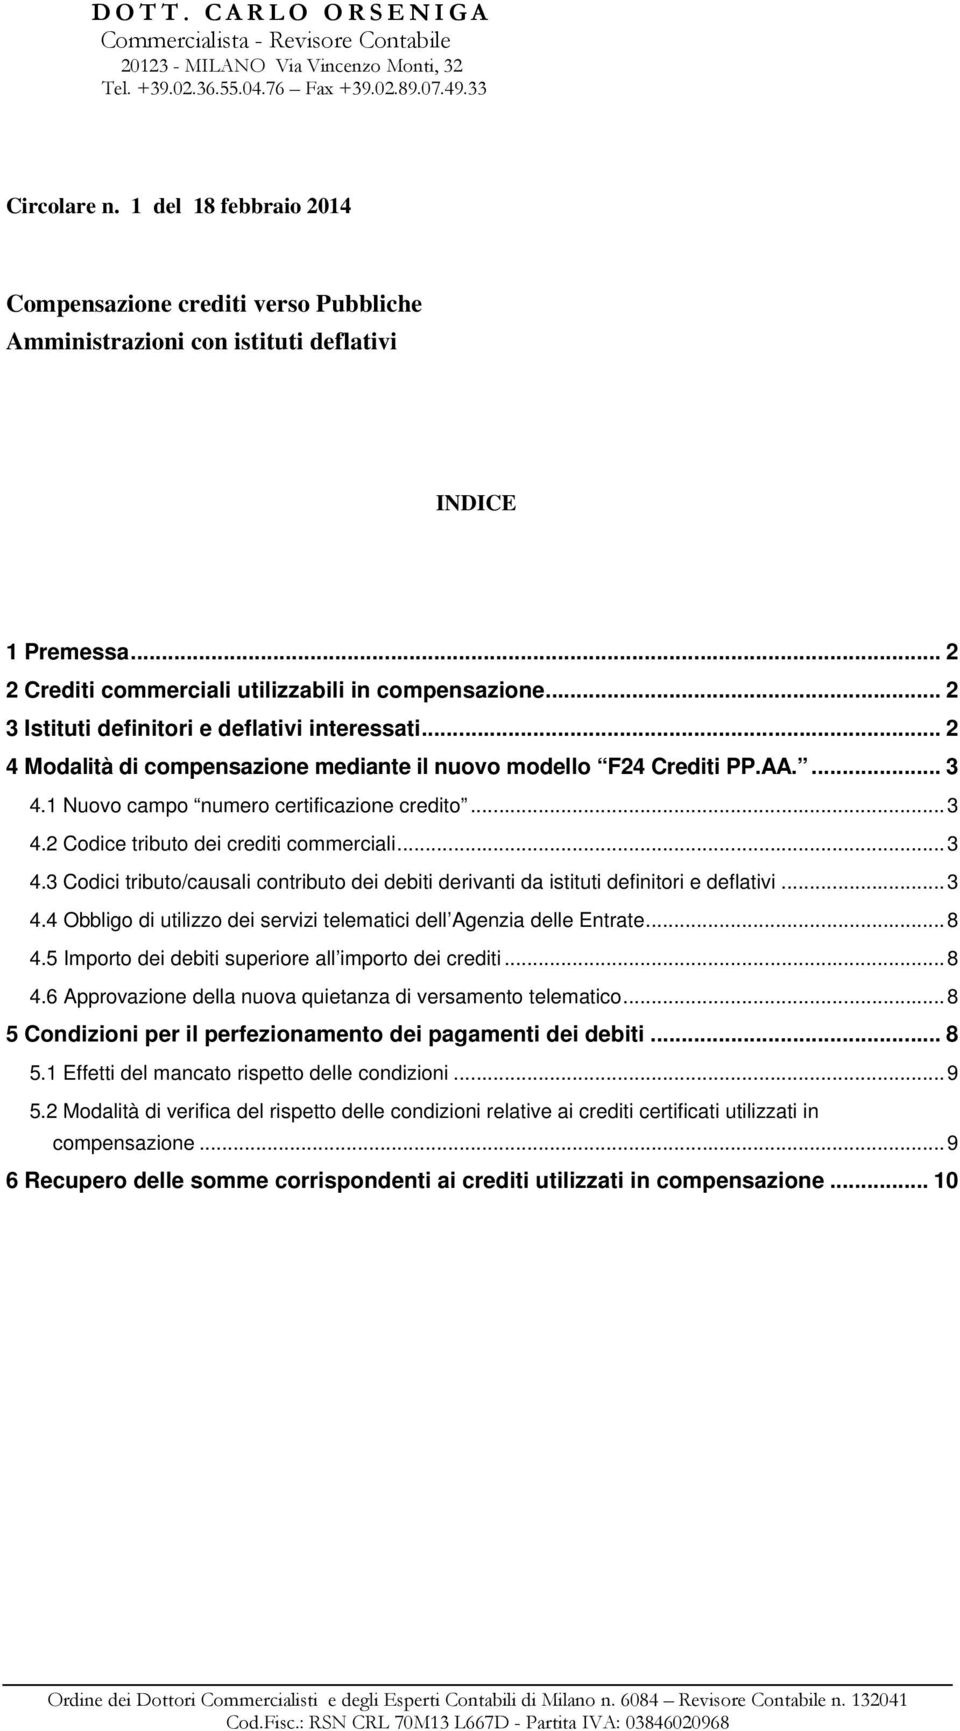 .. 2 3 Istituti definitori e deflativi interessati... 2 4 Modalità di compensazione mediante il nuovo modello F24 Crediti PP.AA.... 3 4.1 Nuovo campo numero certificazione credito...3 4.2 Codice tributo dei crediti commerciali.